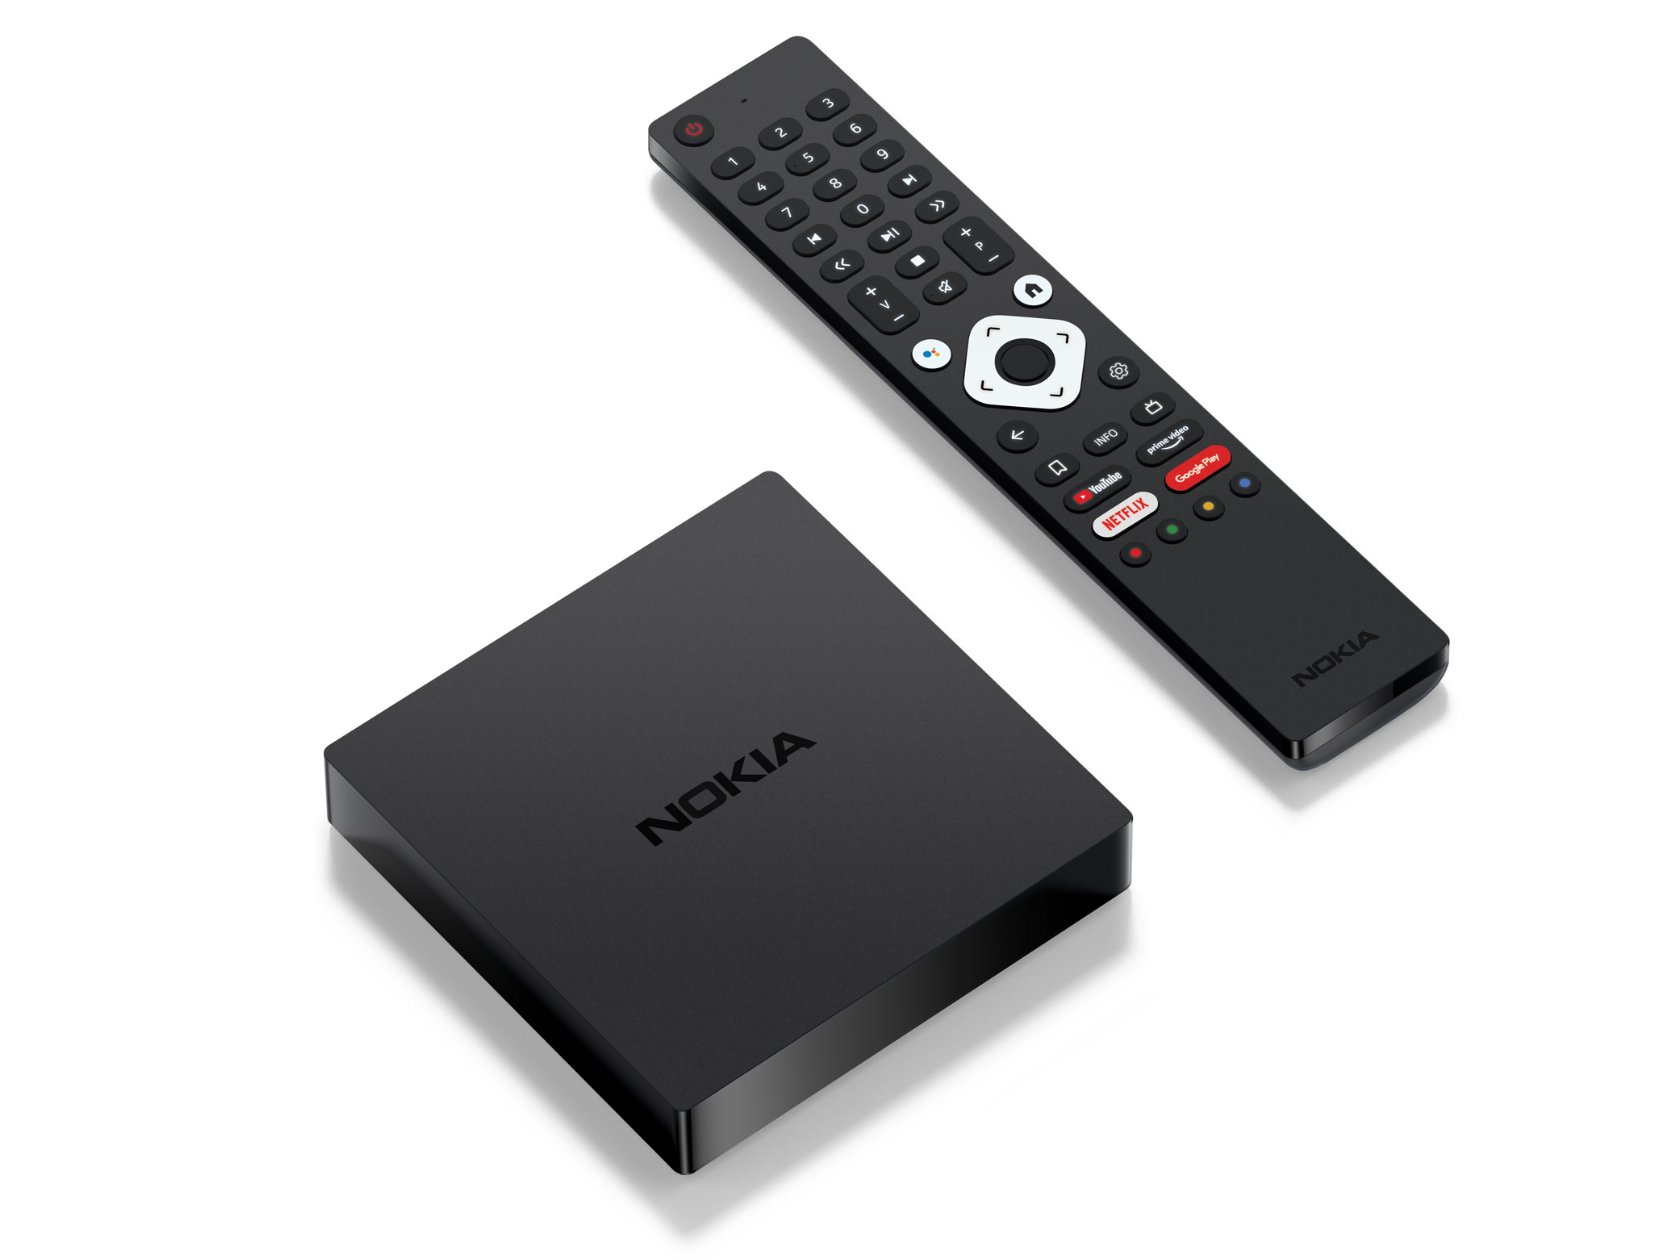 przystawka 4K Nokia Streaming Box 8000 cena Android TV opinie gdzie kupić najtaniej